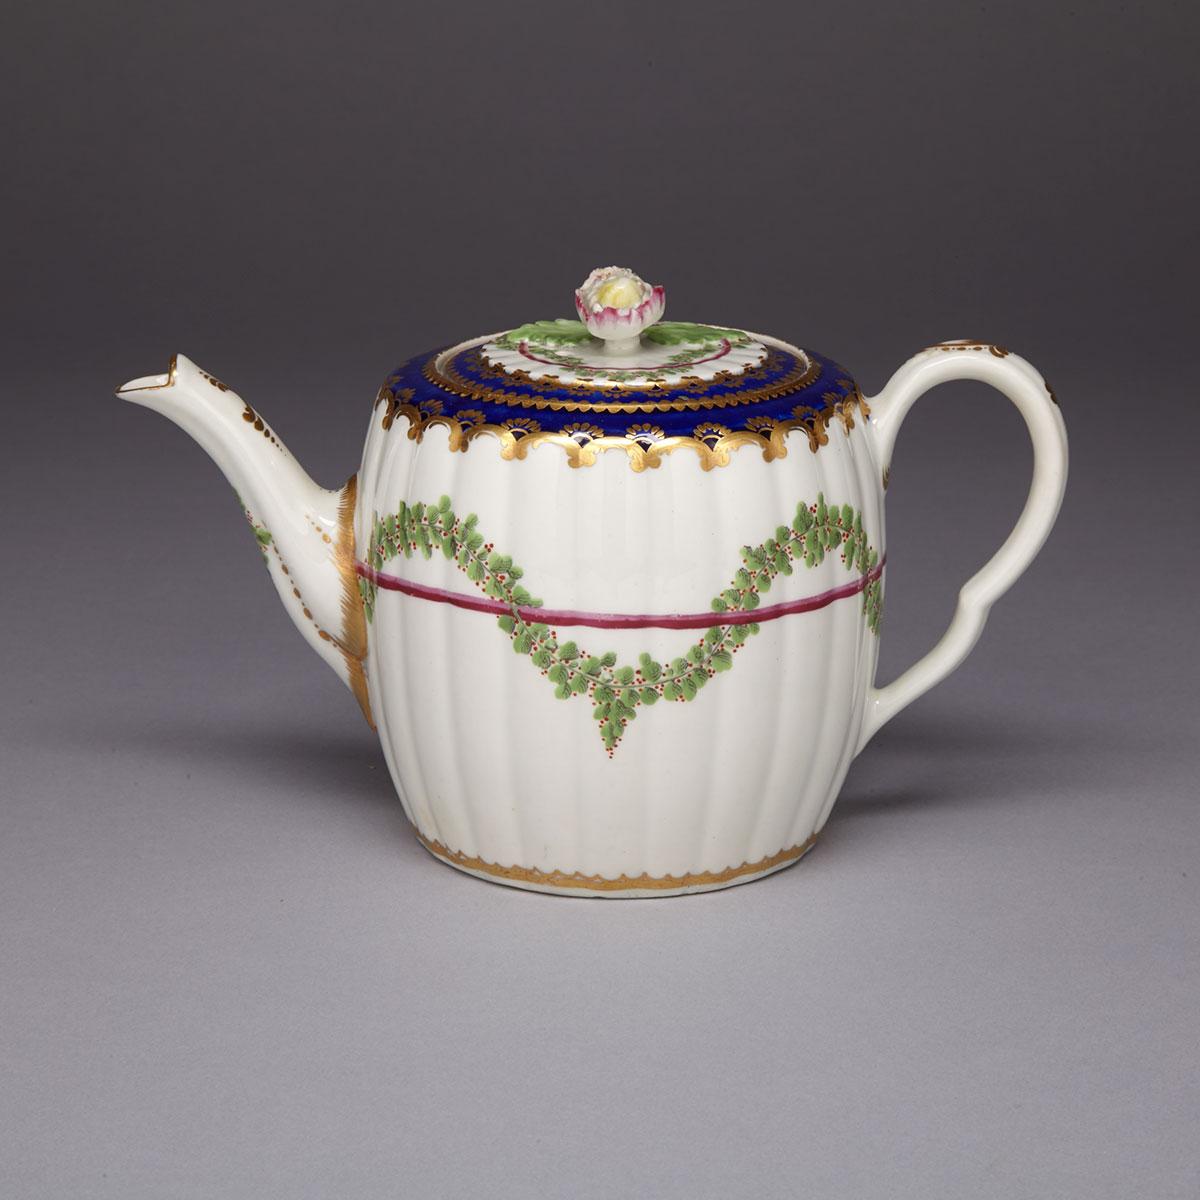 Worcester ‘Hop Trellis’ Teapot, c.1770-75